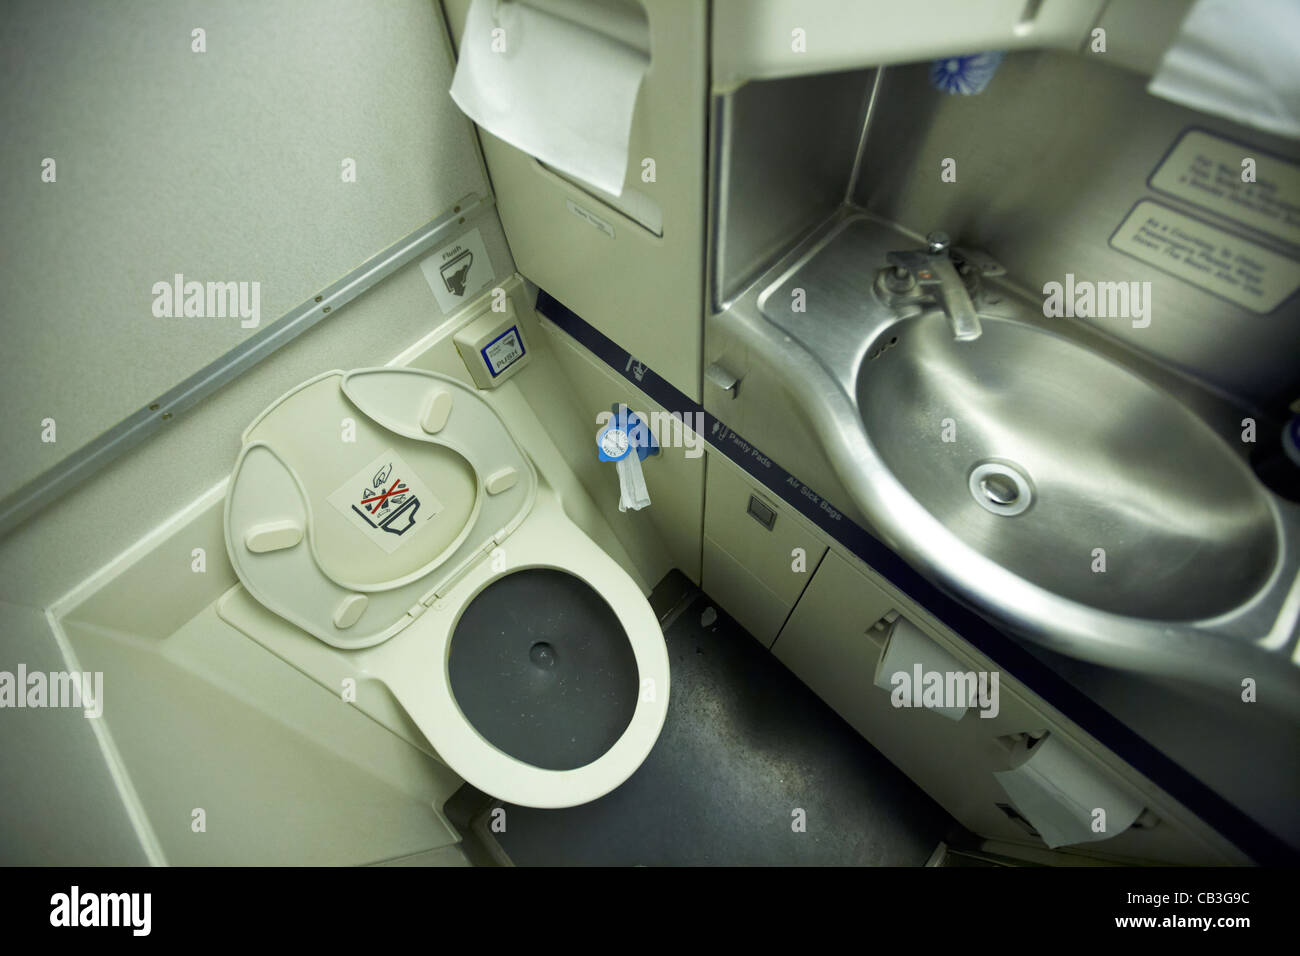 Toilette per aereo immagini e fotografie stock ad alta risoluzione - Alamy